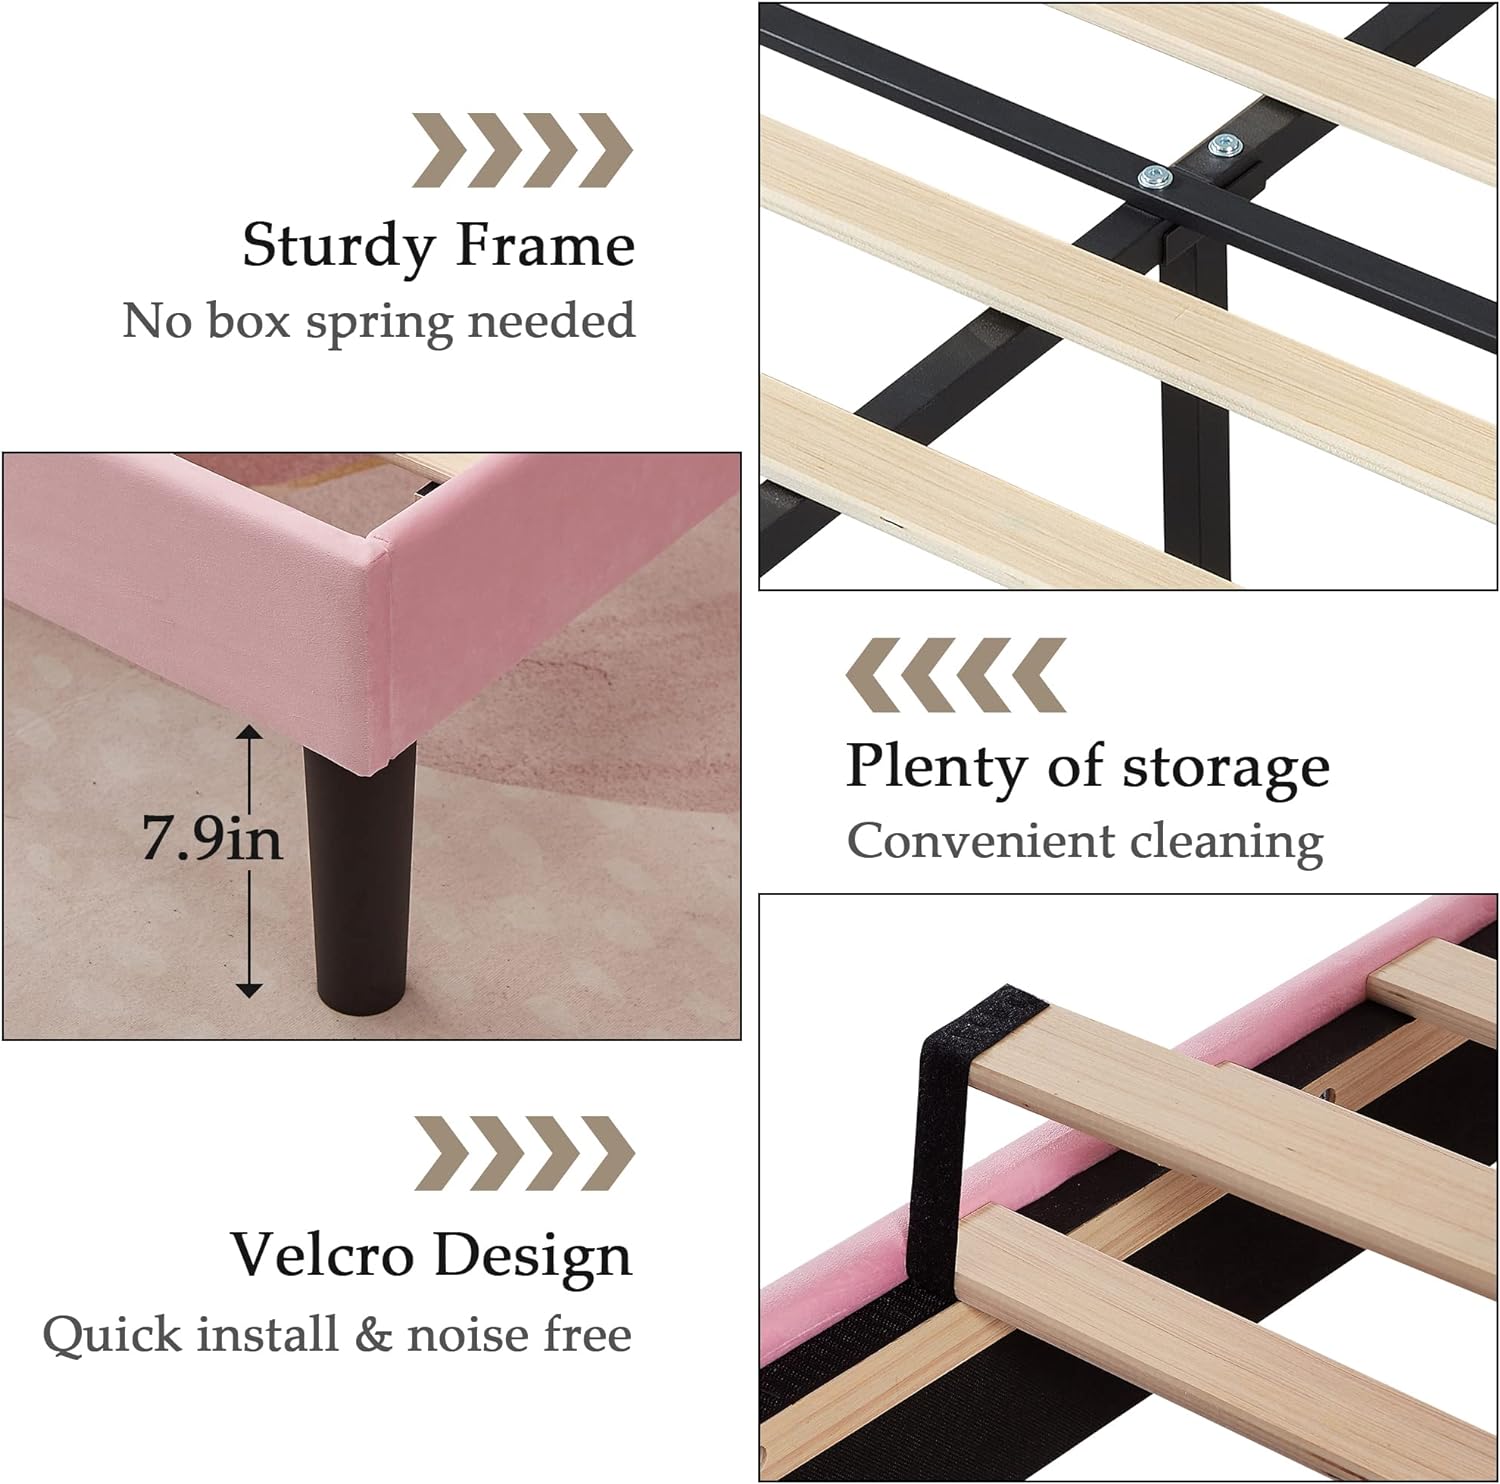 VECELO Upholstered Platform Bed Frame with Tufted Adjustable Headboard & Wood Slat Support